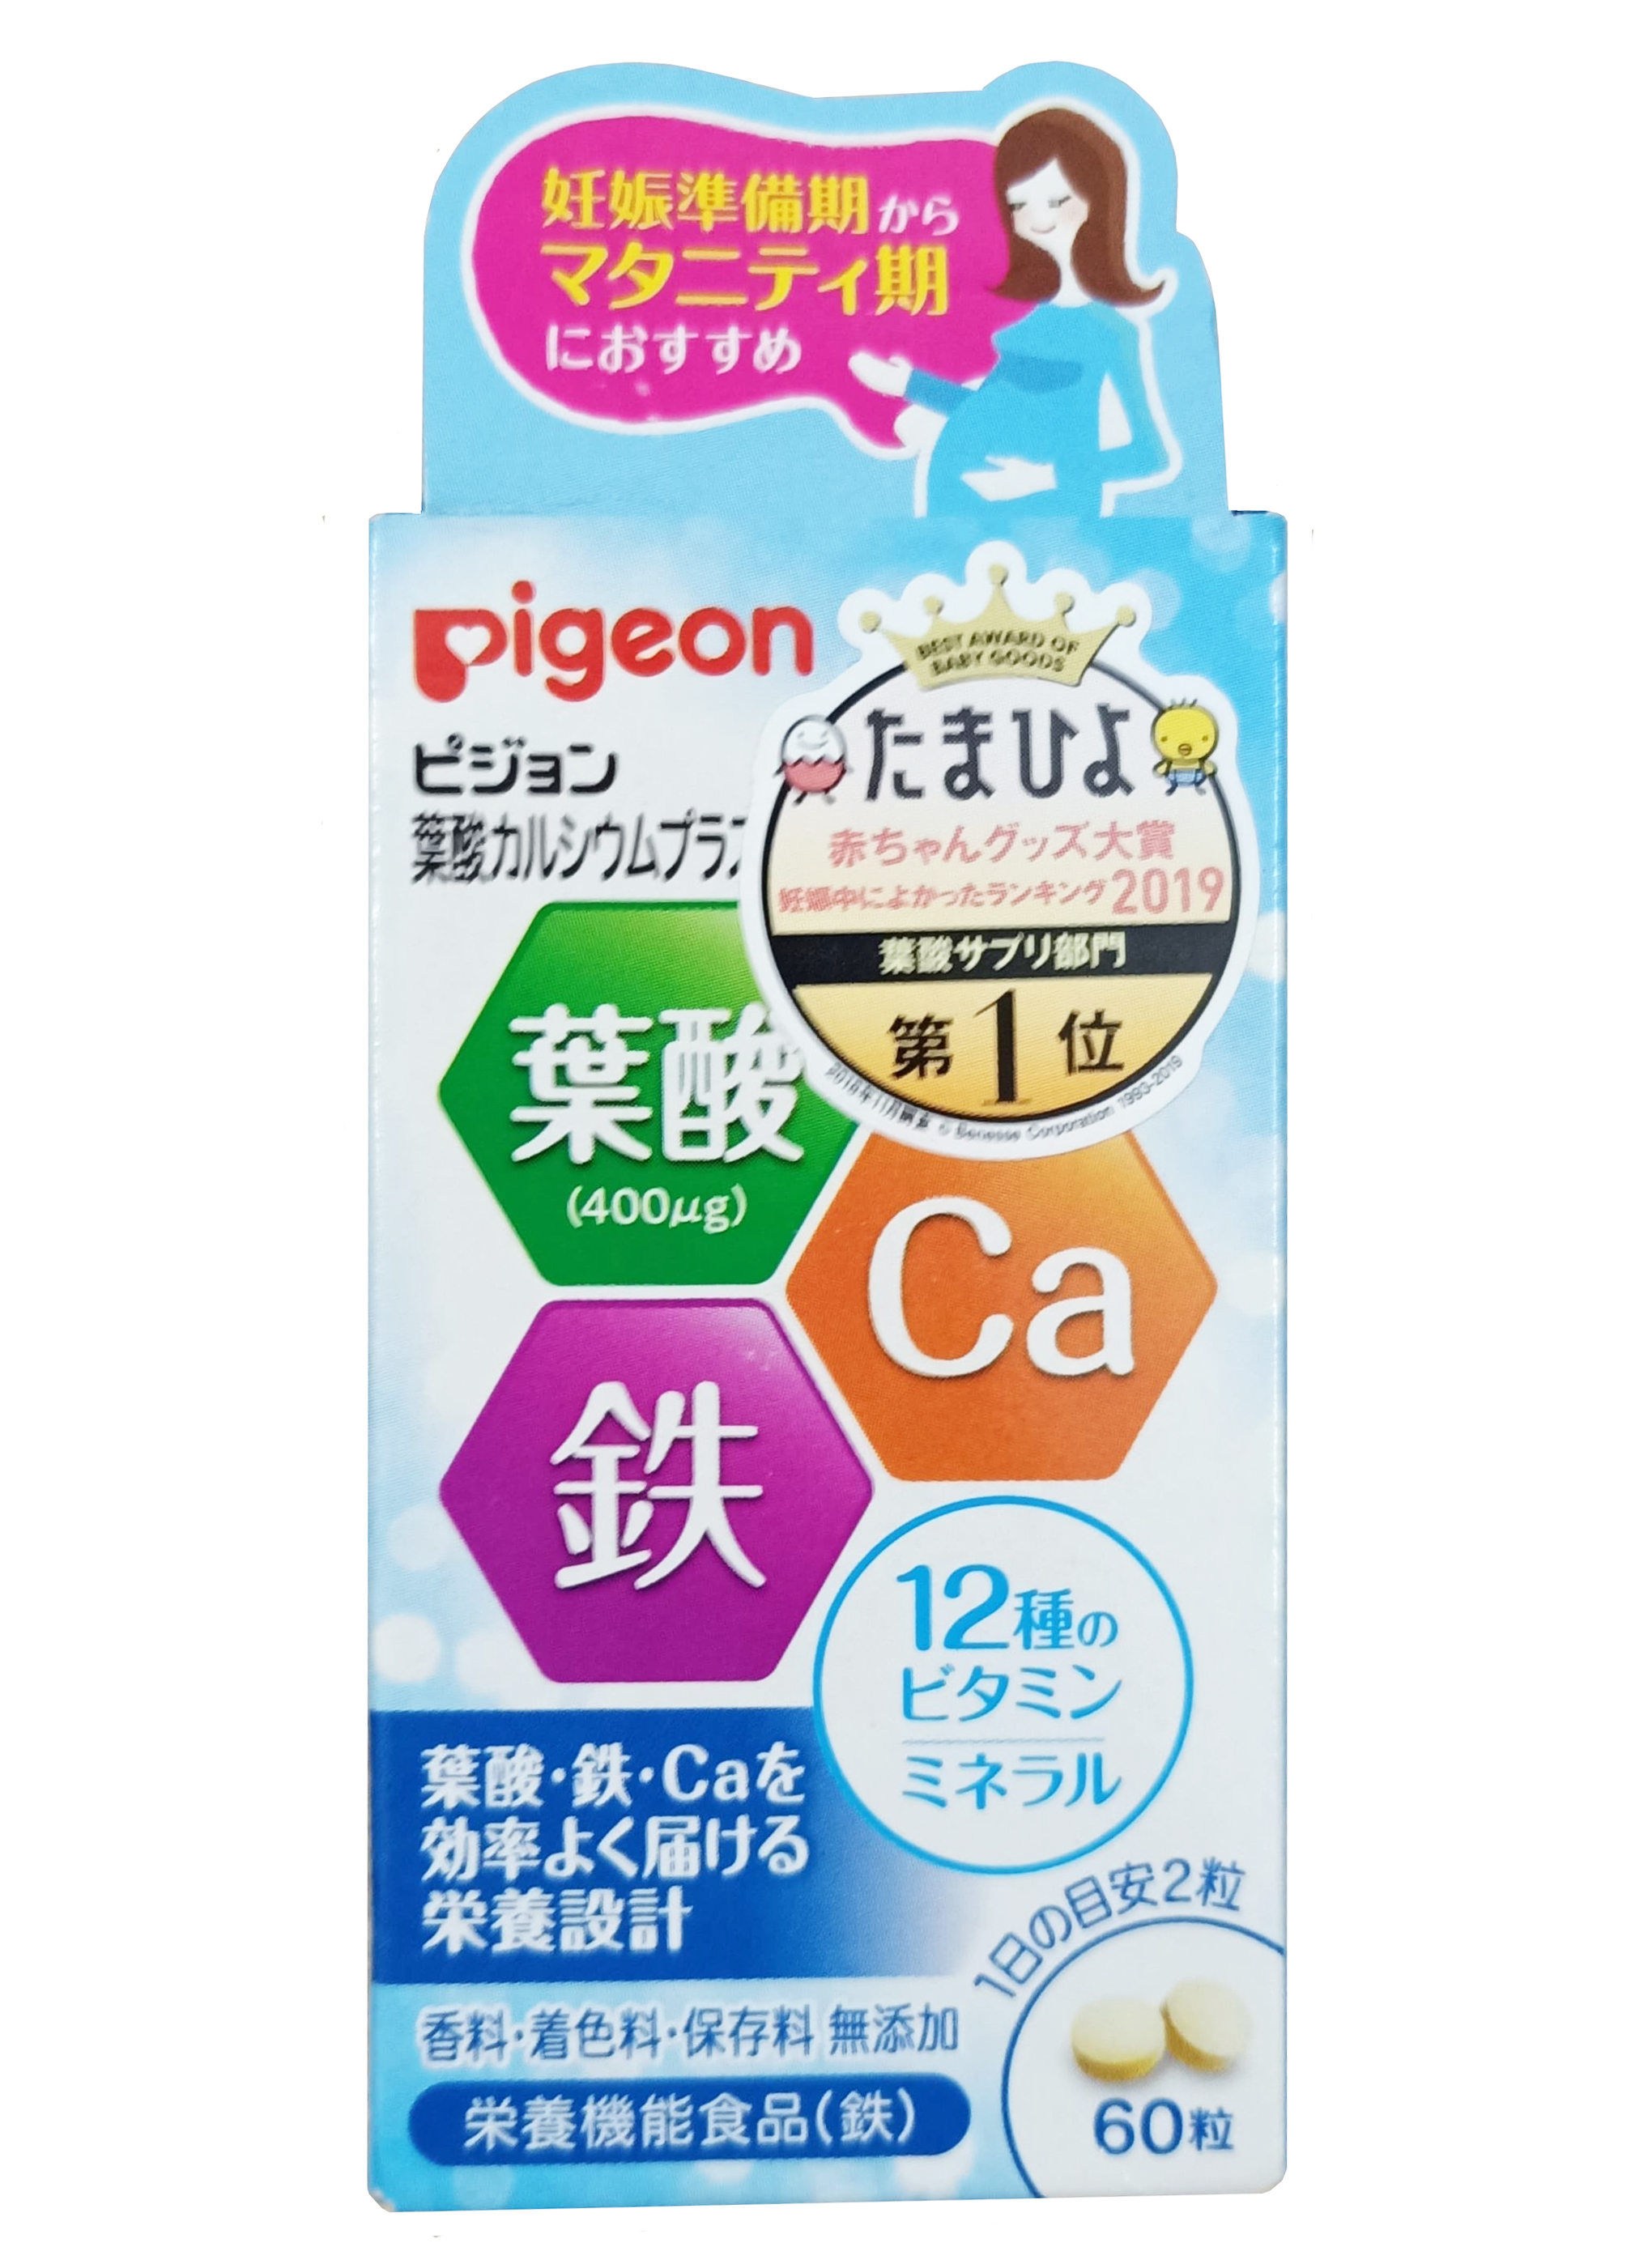 Thành phần chính có trong viên uống vitamin tổng hợp cho bà bầu Pigeon là gì?
